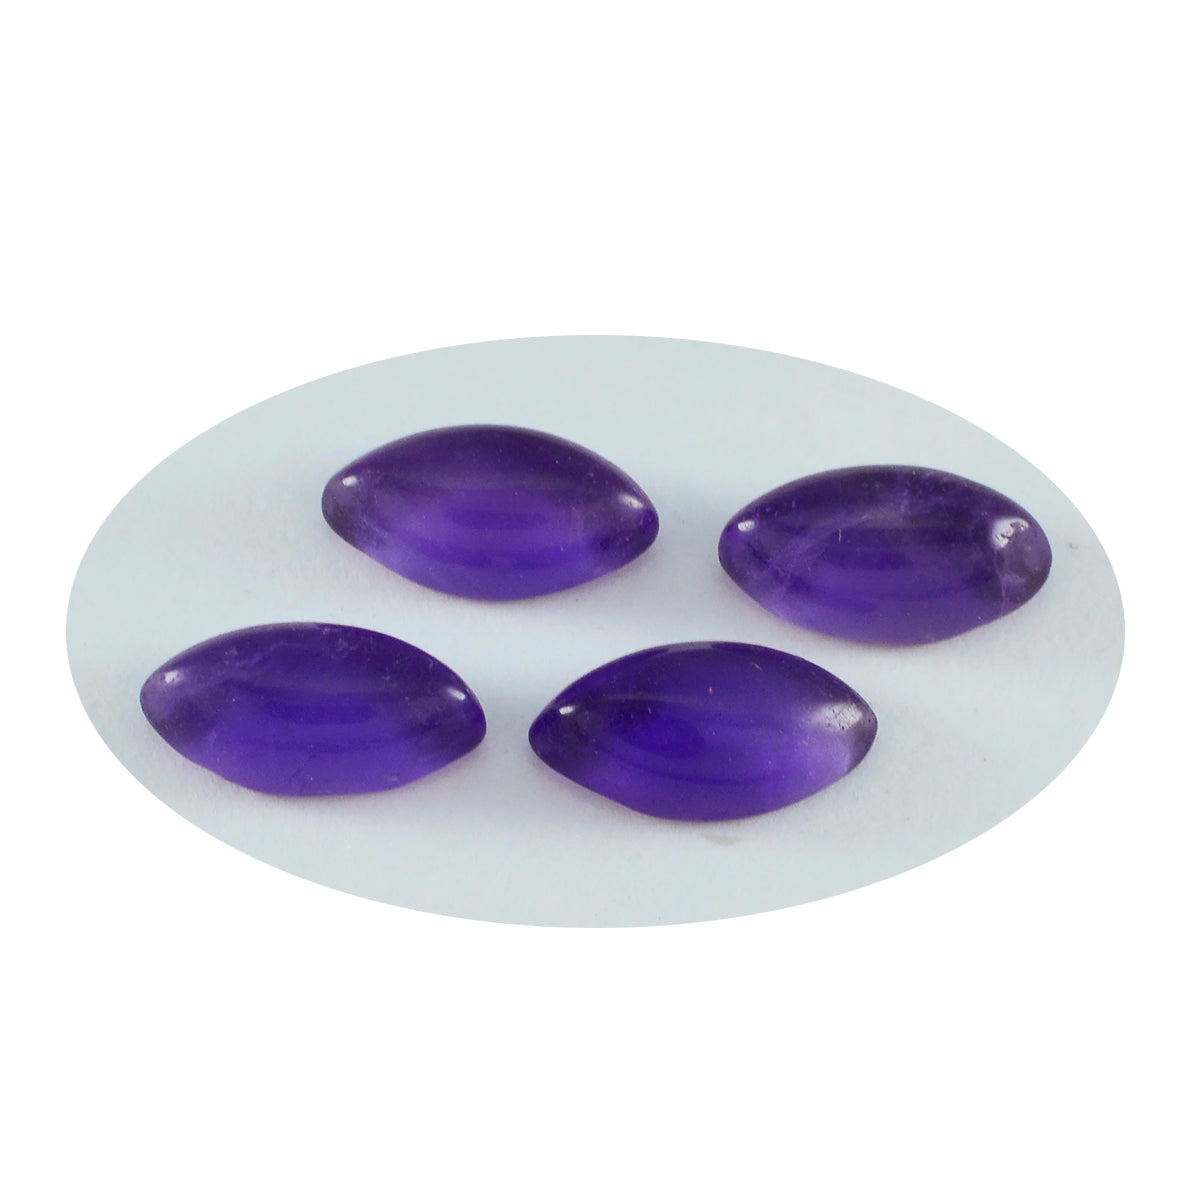 riyogems 1 шт., фиолетовый аметист, кабошон 6x12 мм, милый качественный драгоценный камень в форме маркизы